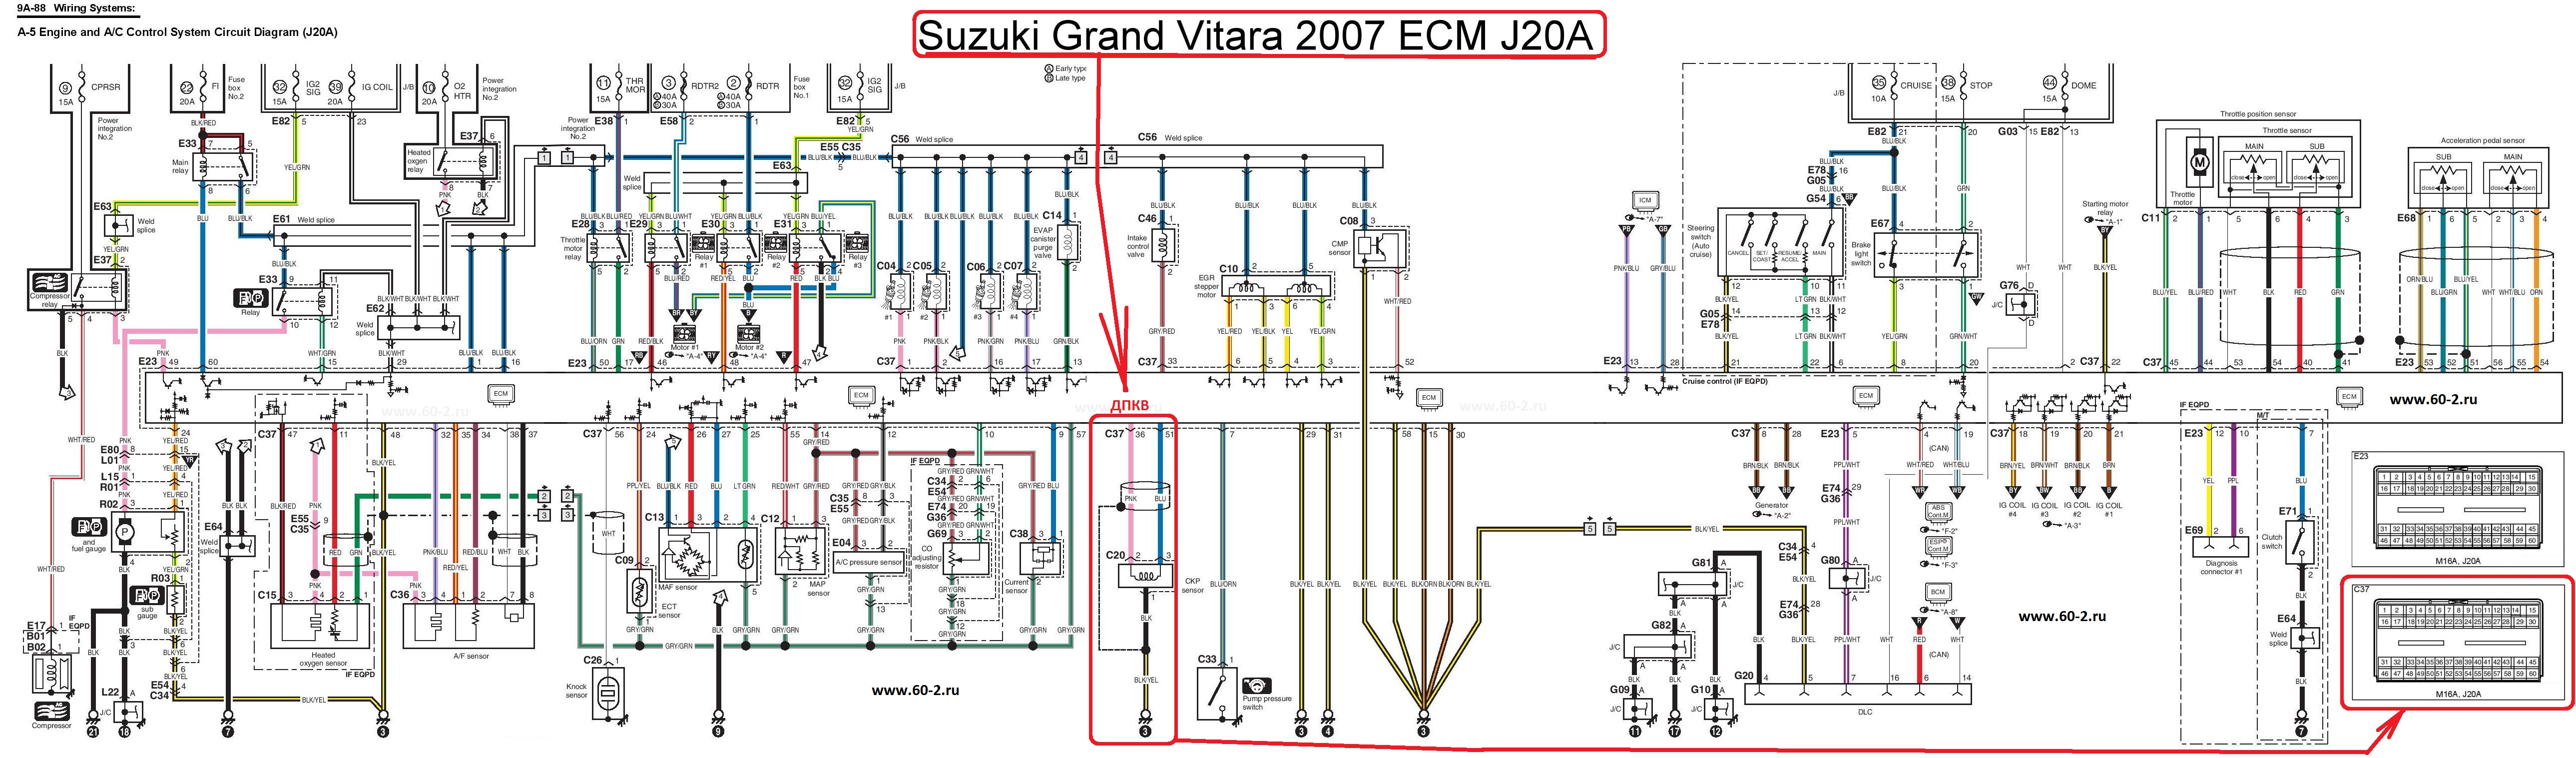 Suzuki Grand Vitara 2007 ECM J20A.jpg